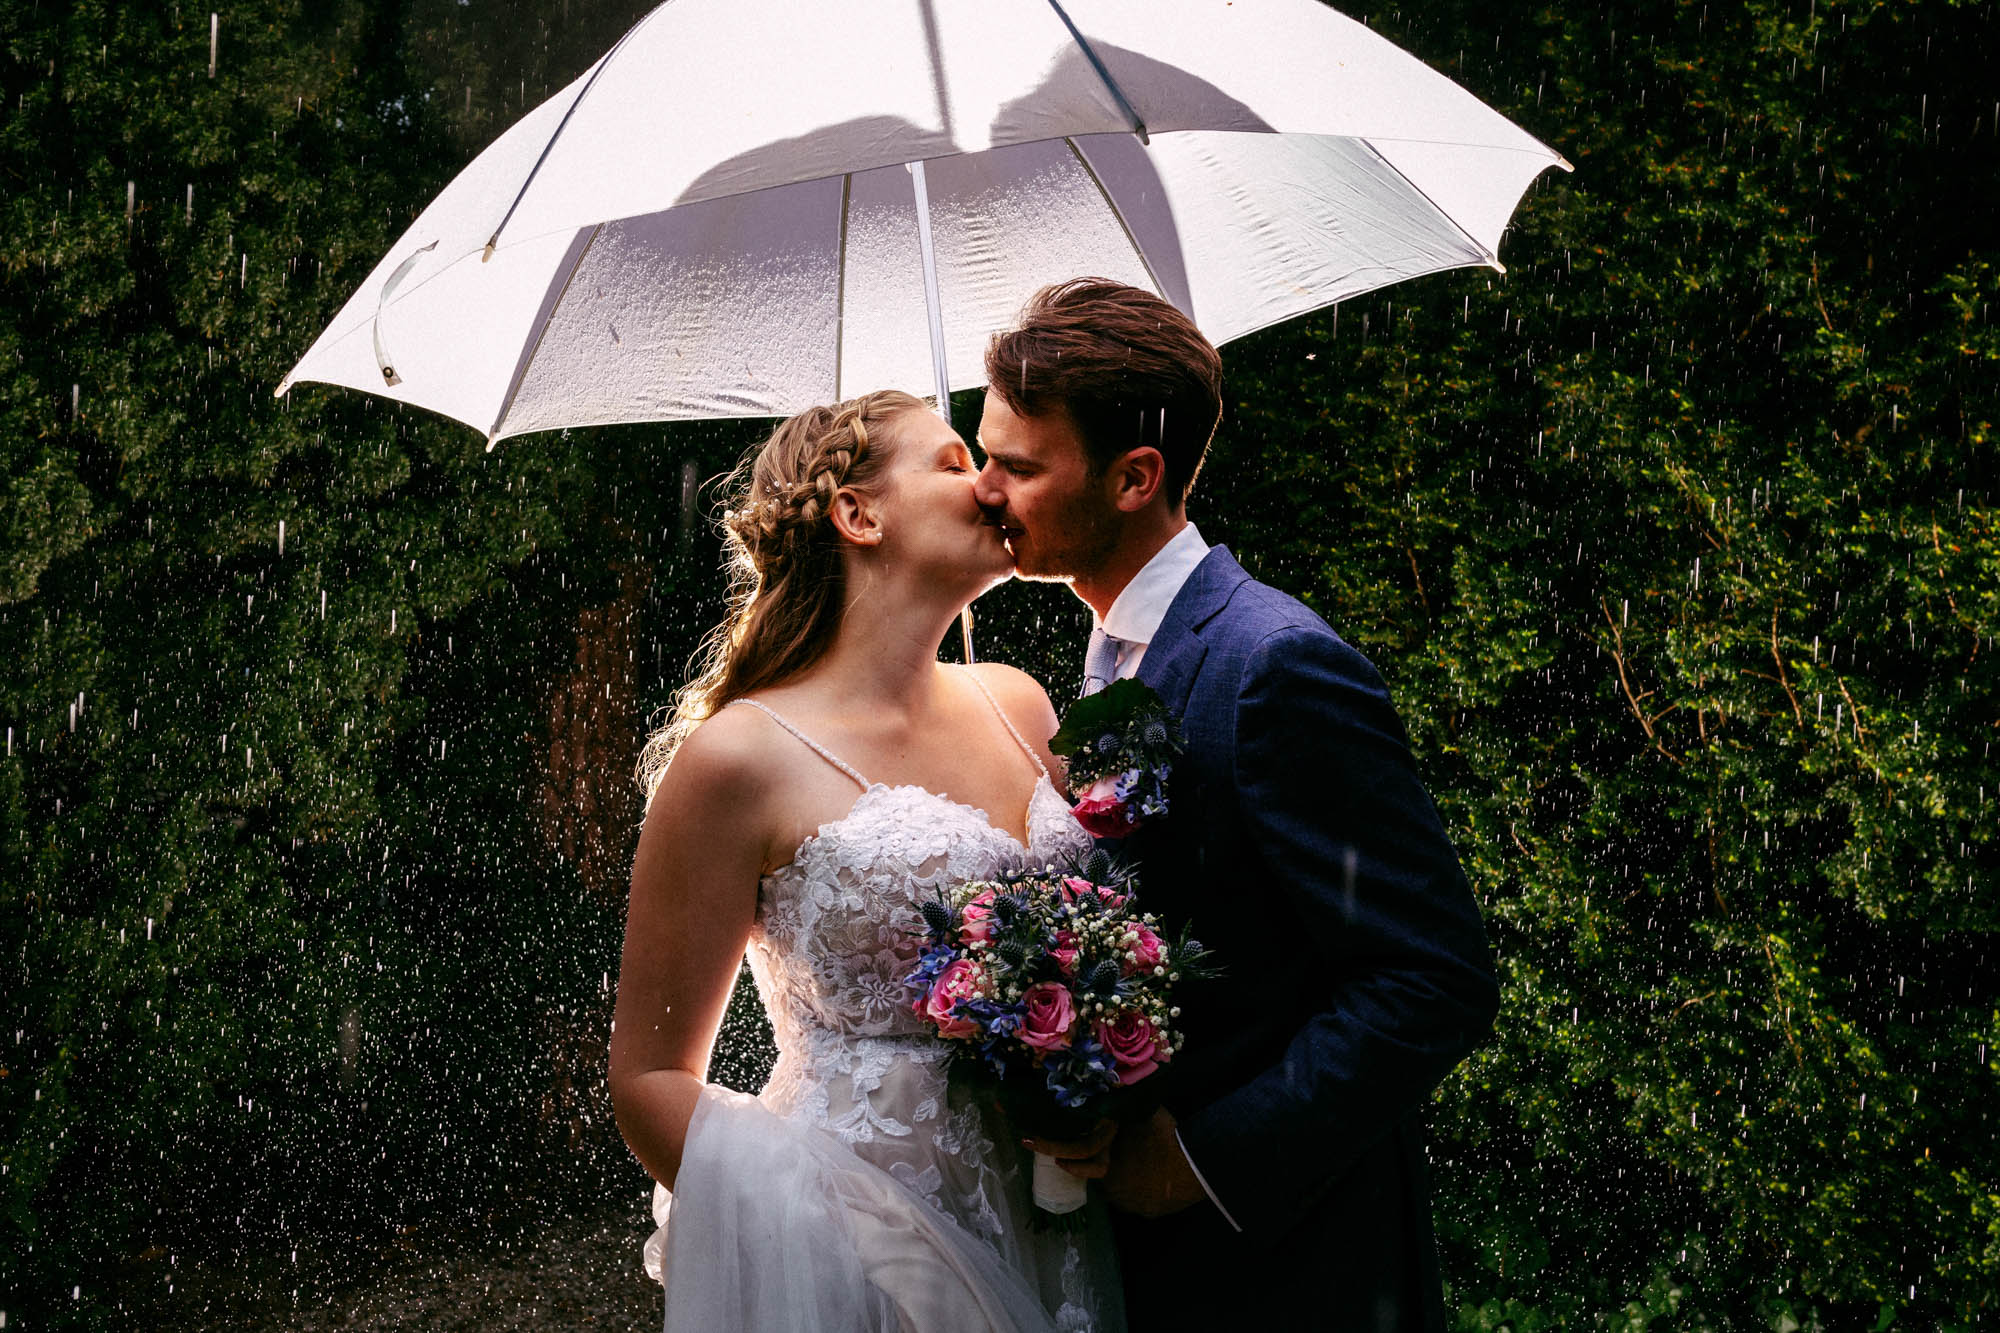 Een bruid en bruidegom delen op hun trouwdag een romantische kus onder een paraplu in de regen en ervaren daarmee de prachtige traditie van "Regen op je bruiloft".